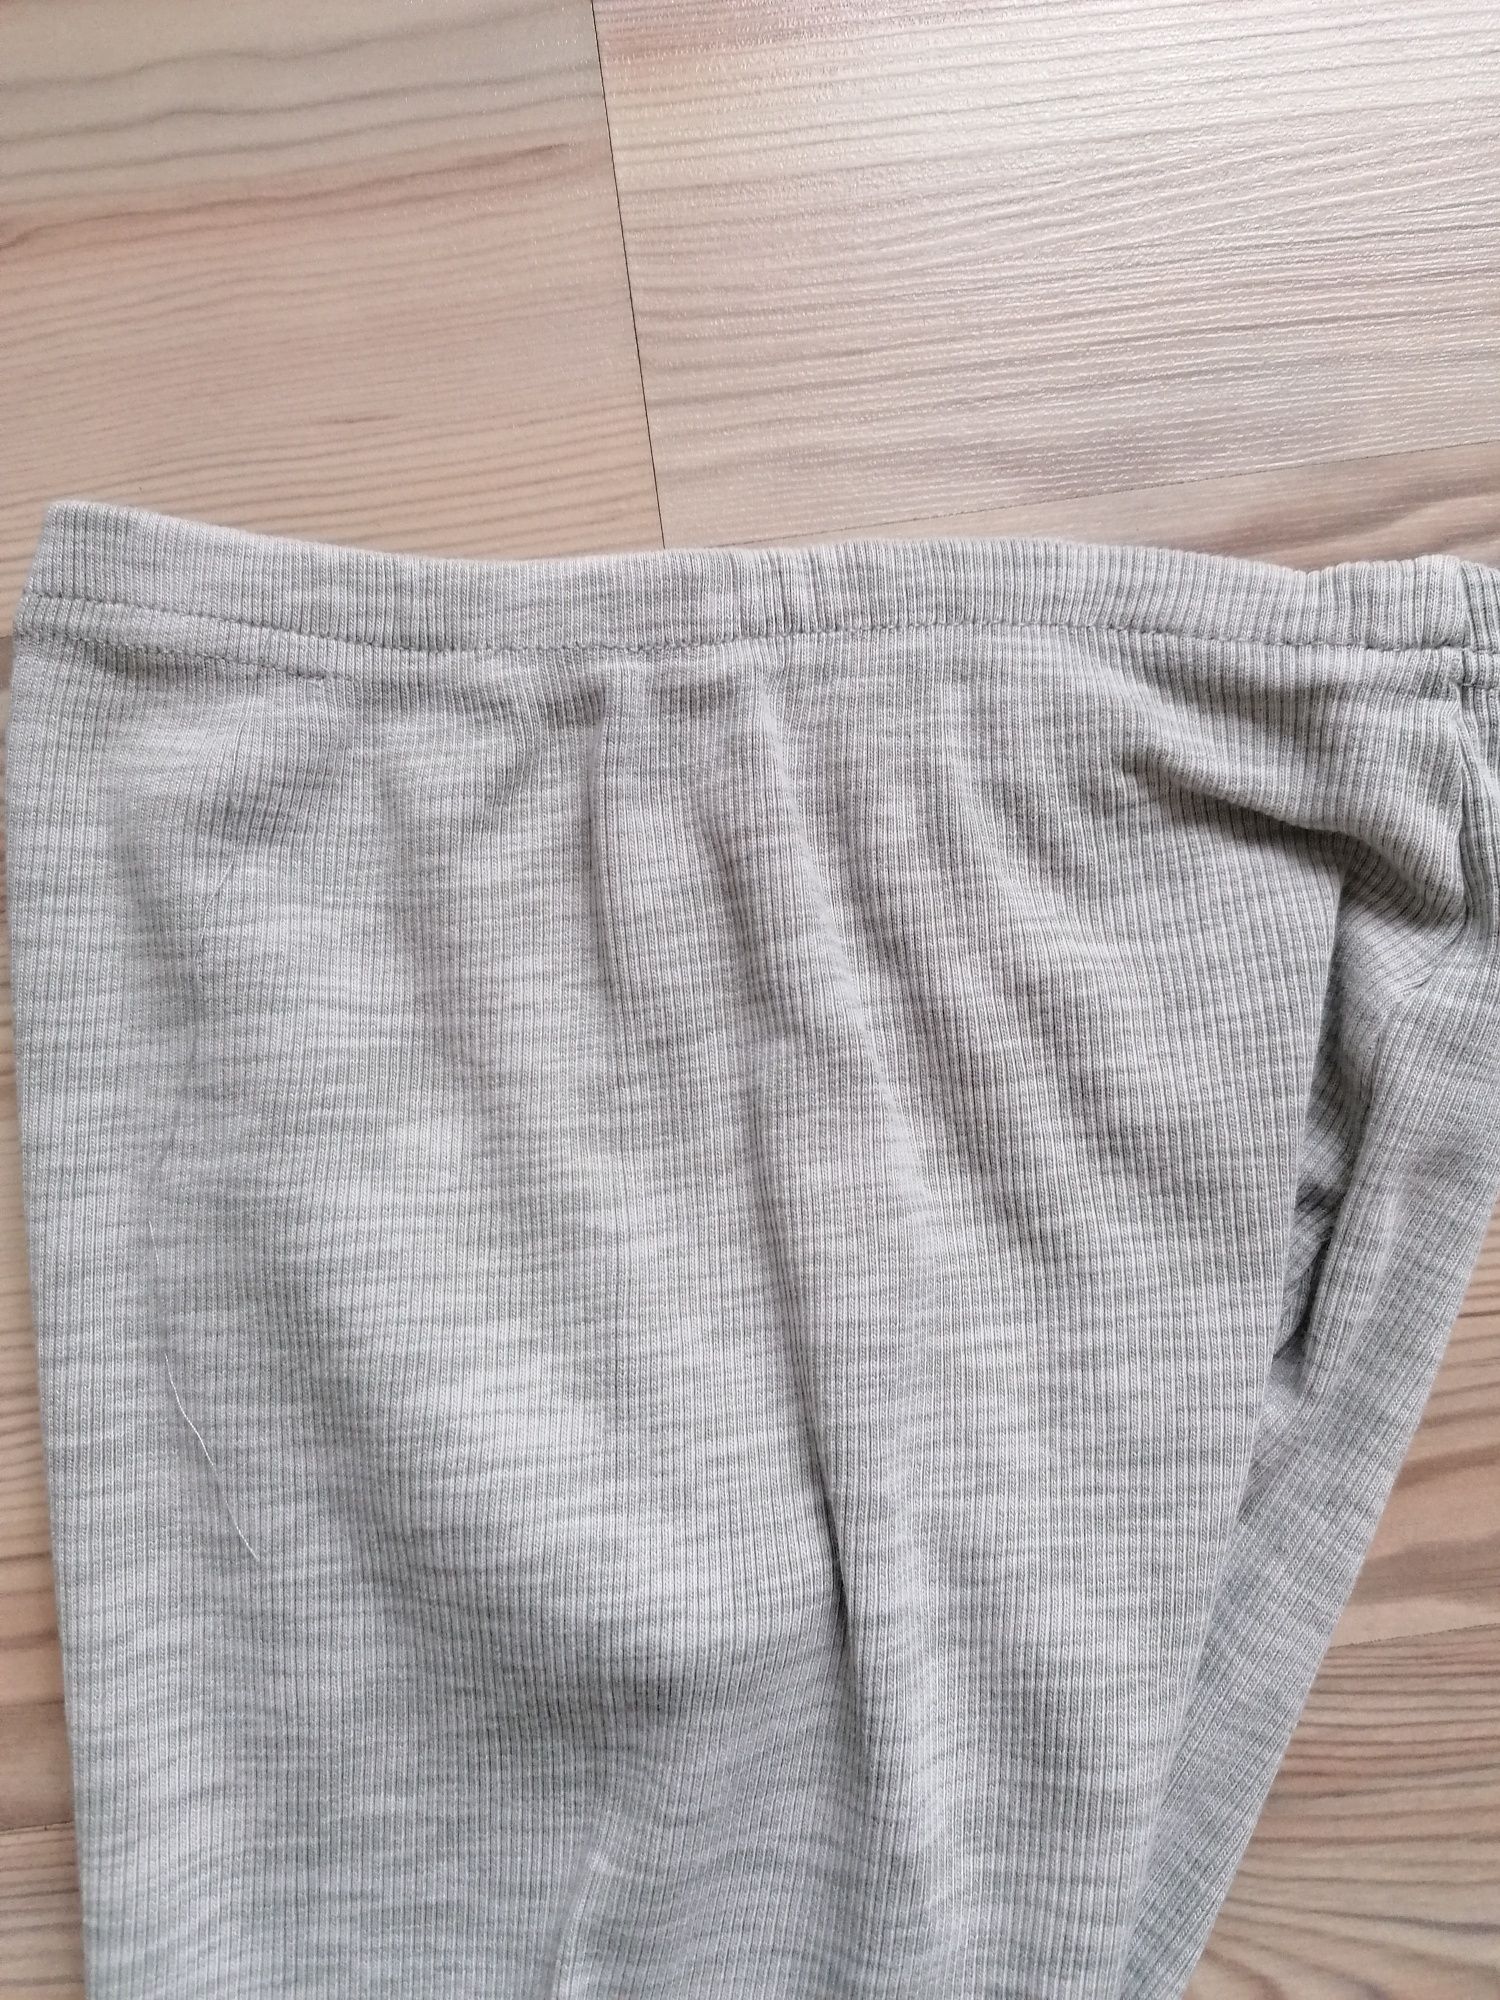 Szare prążkowane bawełniane getry kalesony spodnie leginsy JOHA 134